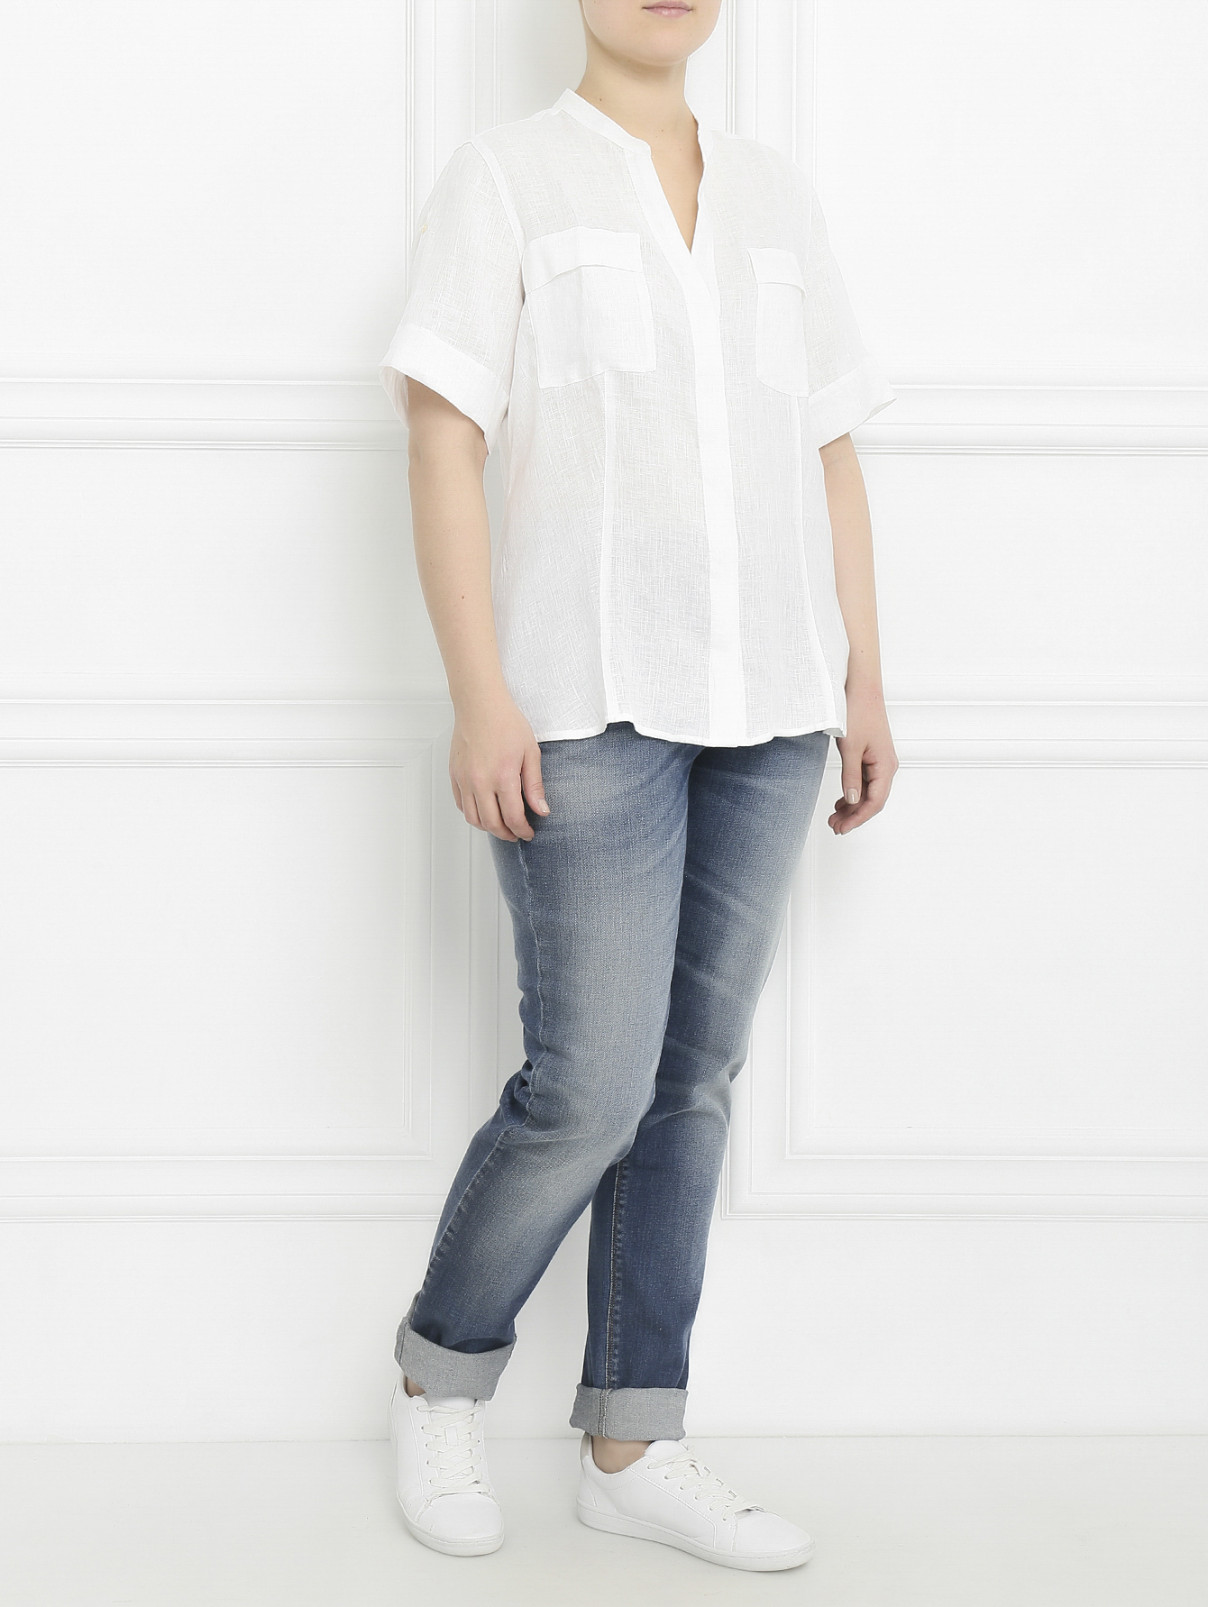 Рубашка из льна с короткими рукавами Marina Sport  –  Модель Общий вид  – Цвет:  Белый